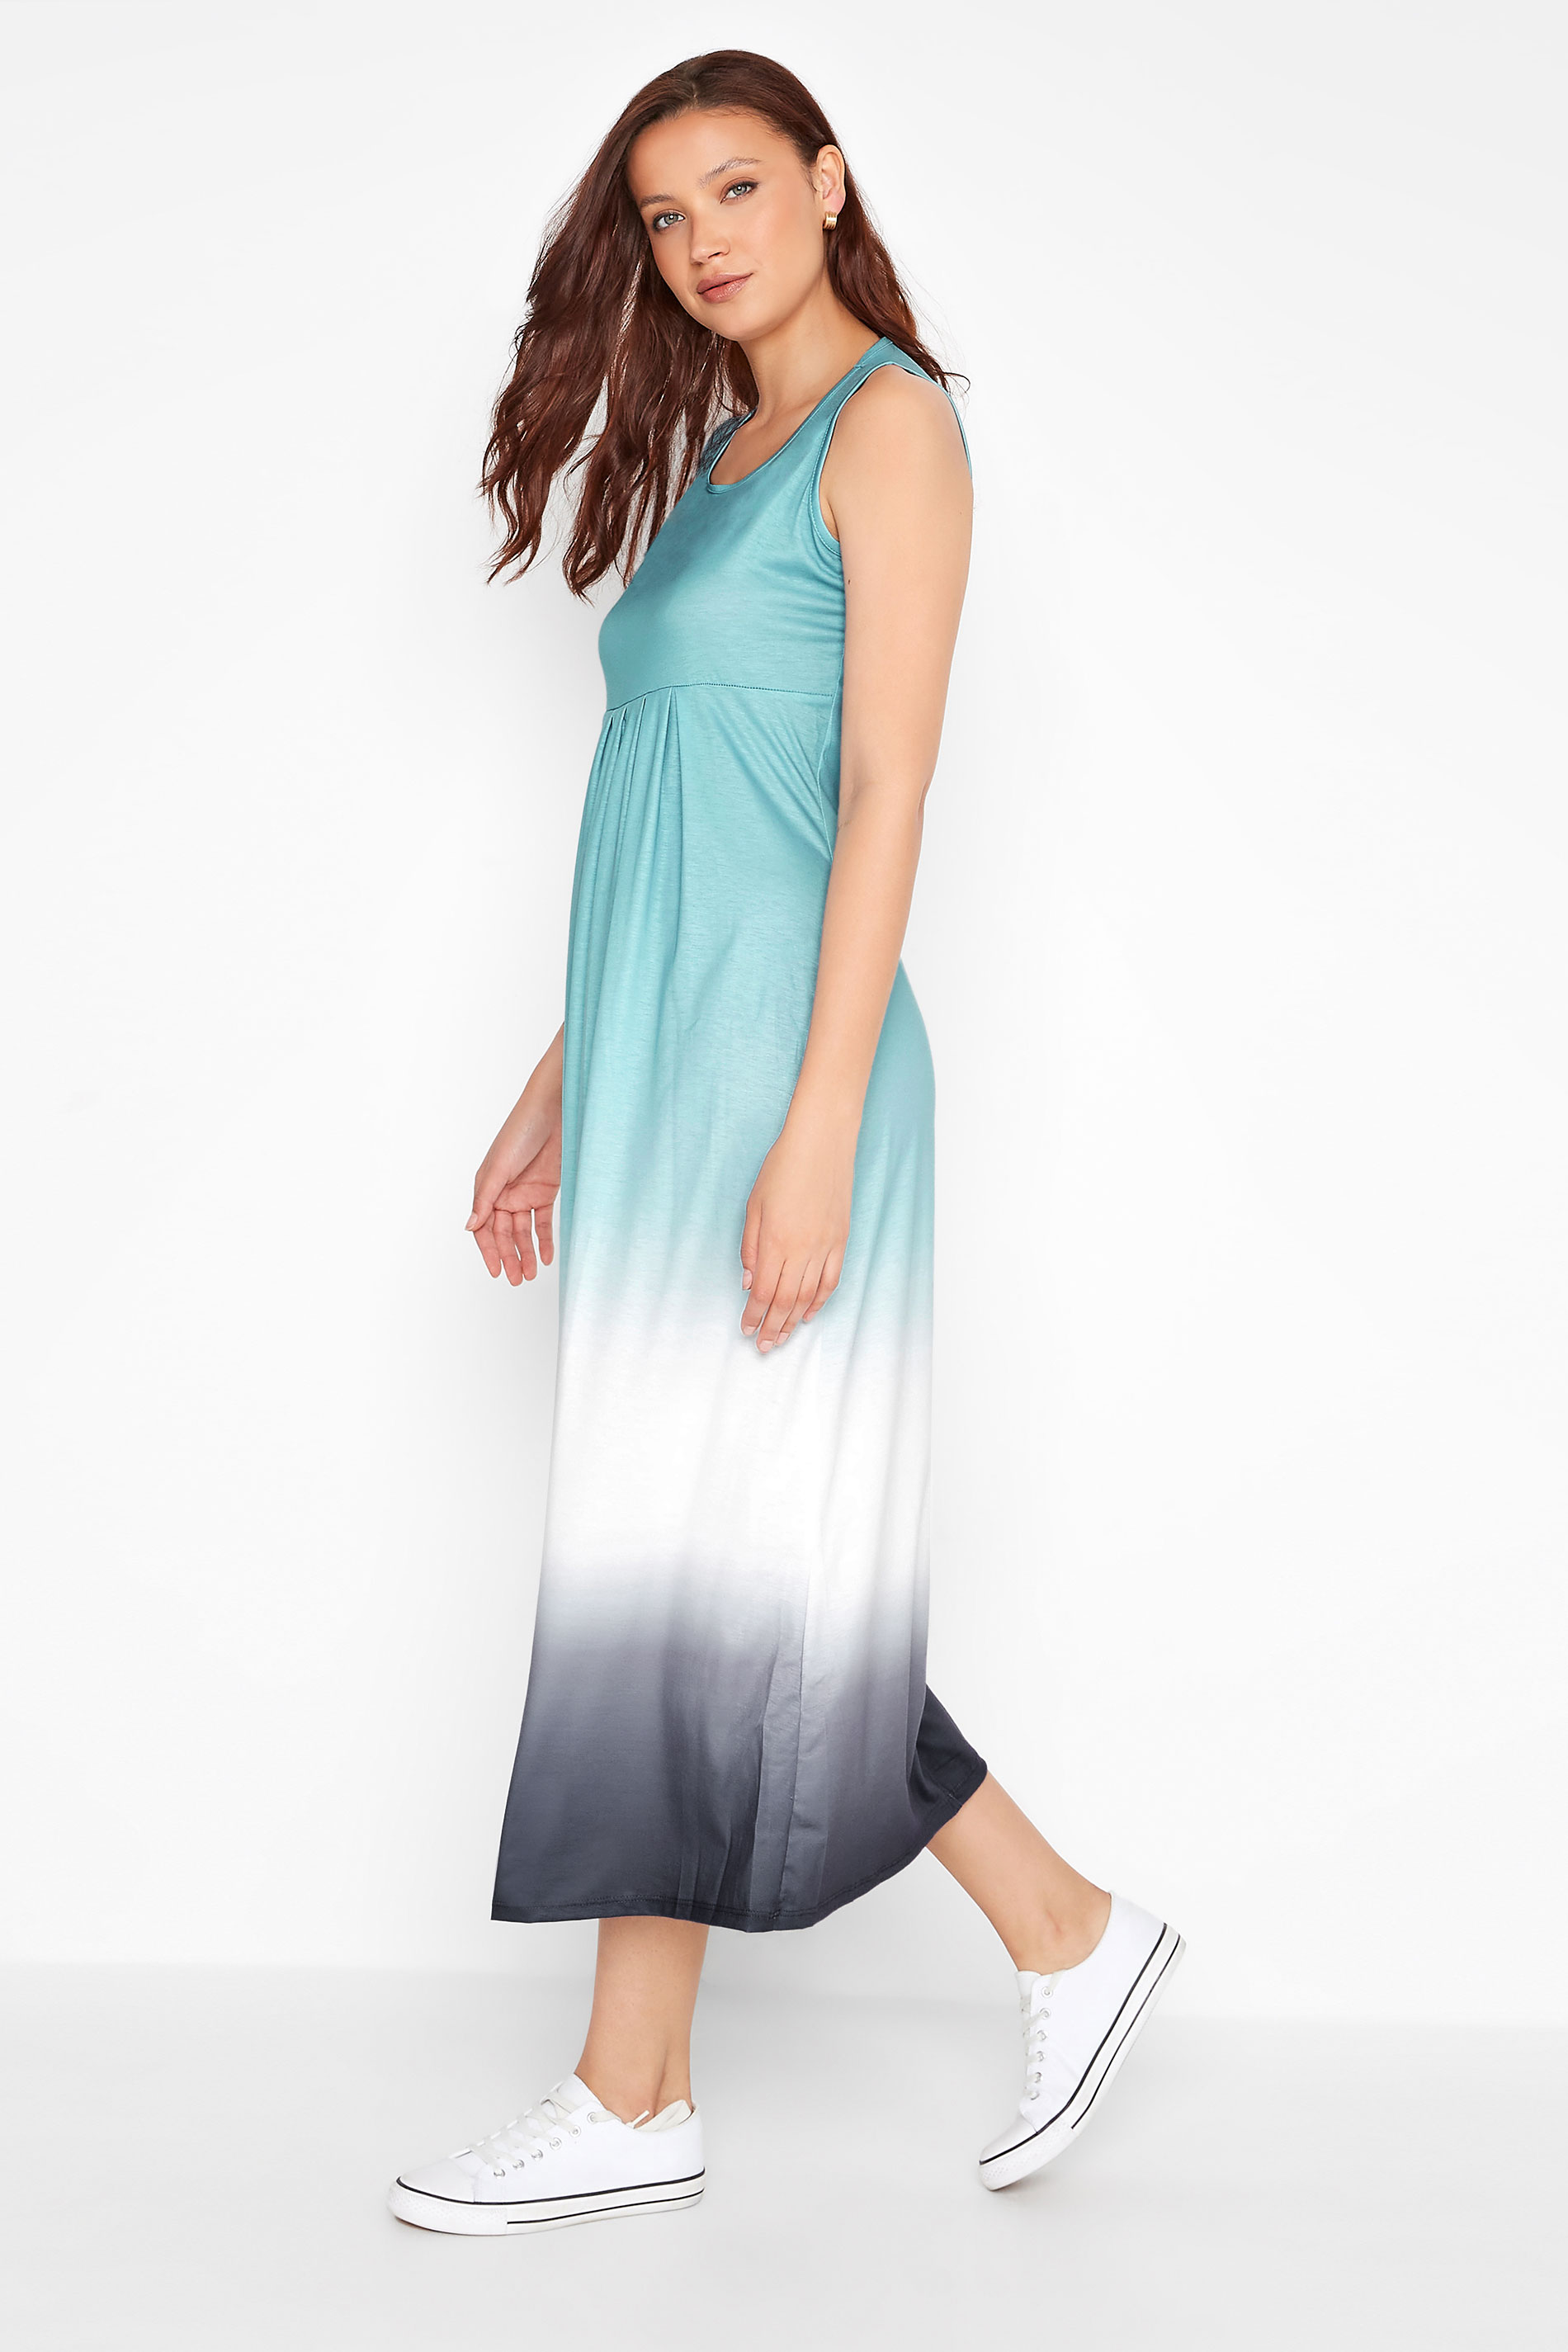 LTS Tall Women's Light Blue Ombre Print Sleeveless Smock Dress | Long Tall Sally 1